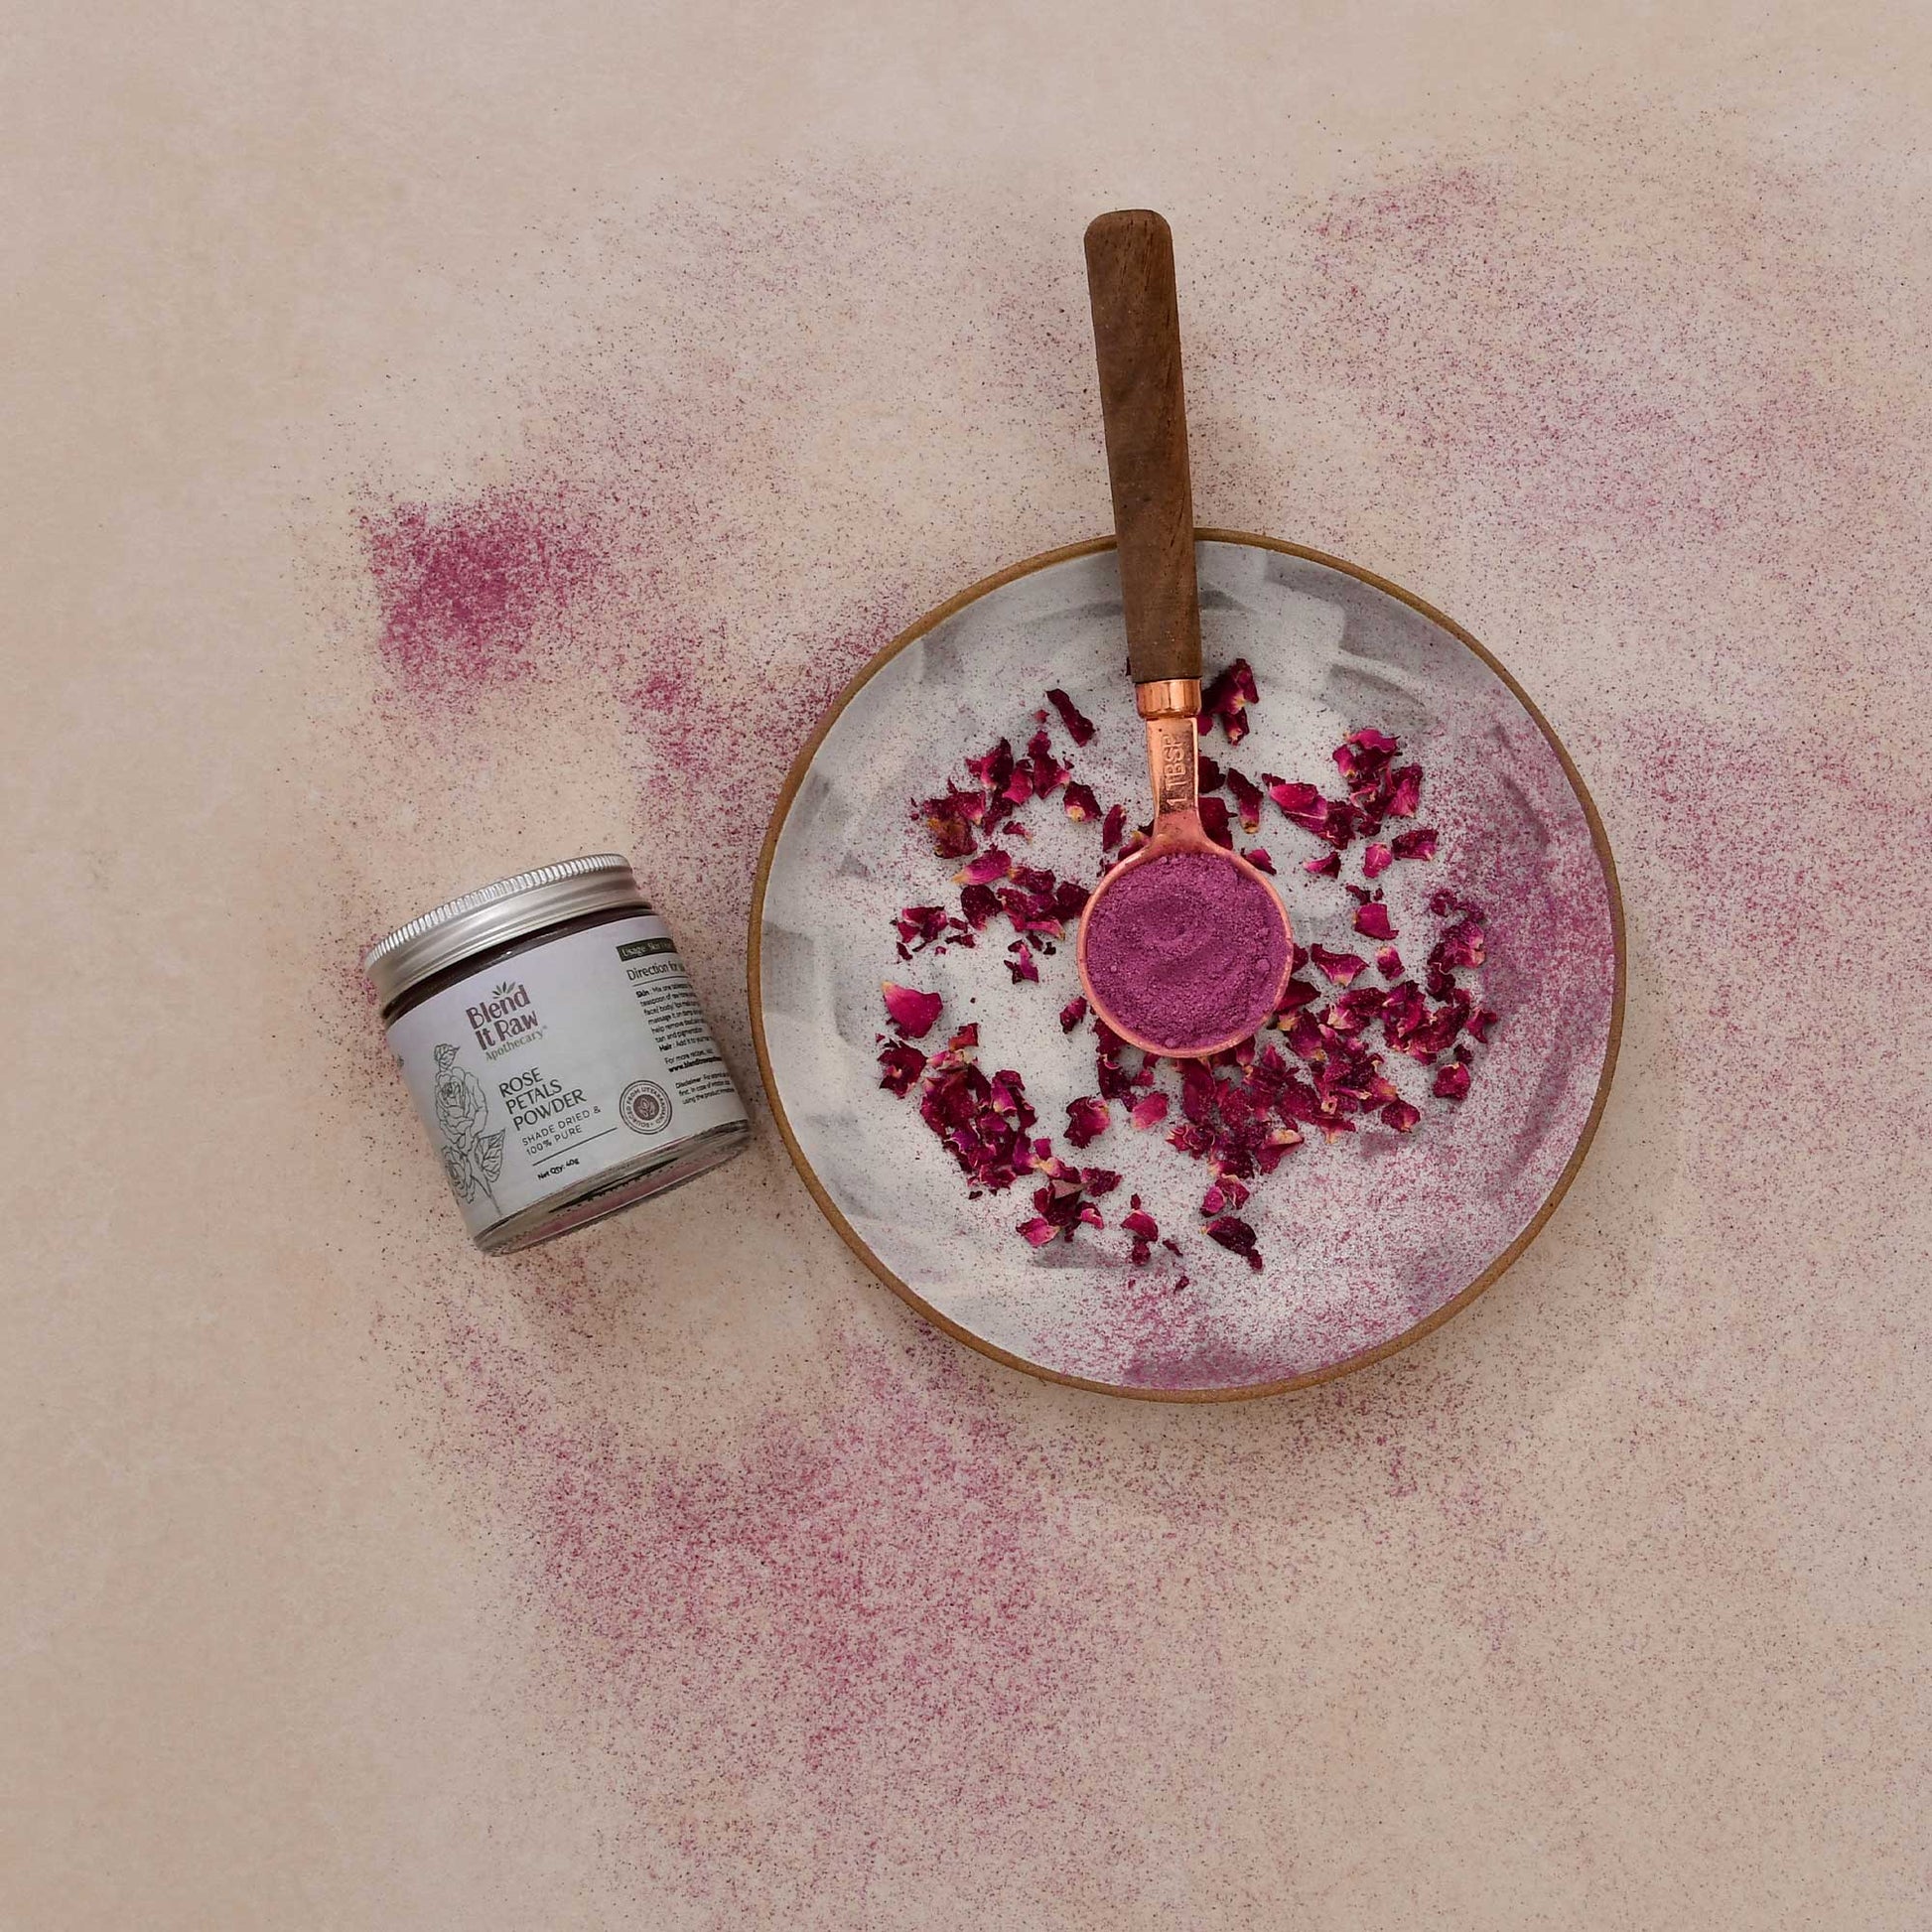 How to make rose petal powder at home, DIY rose petals powder